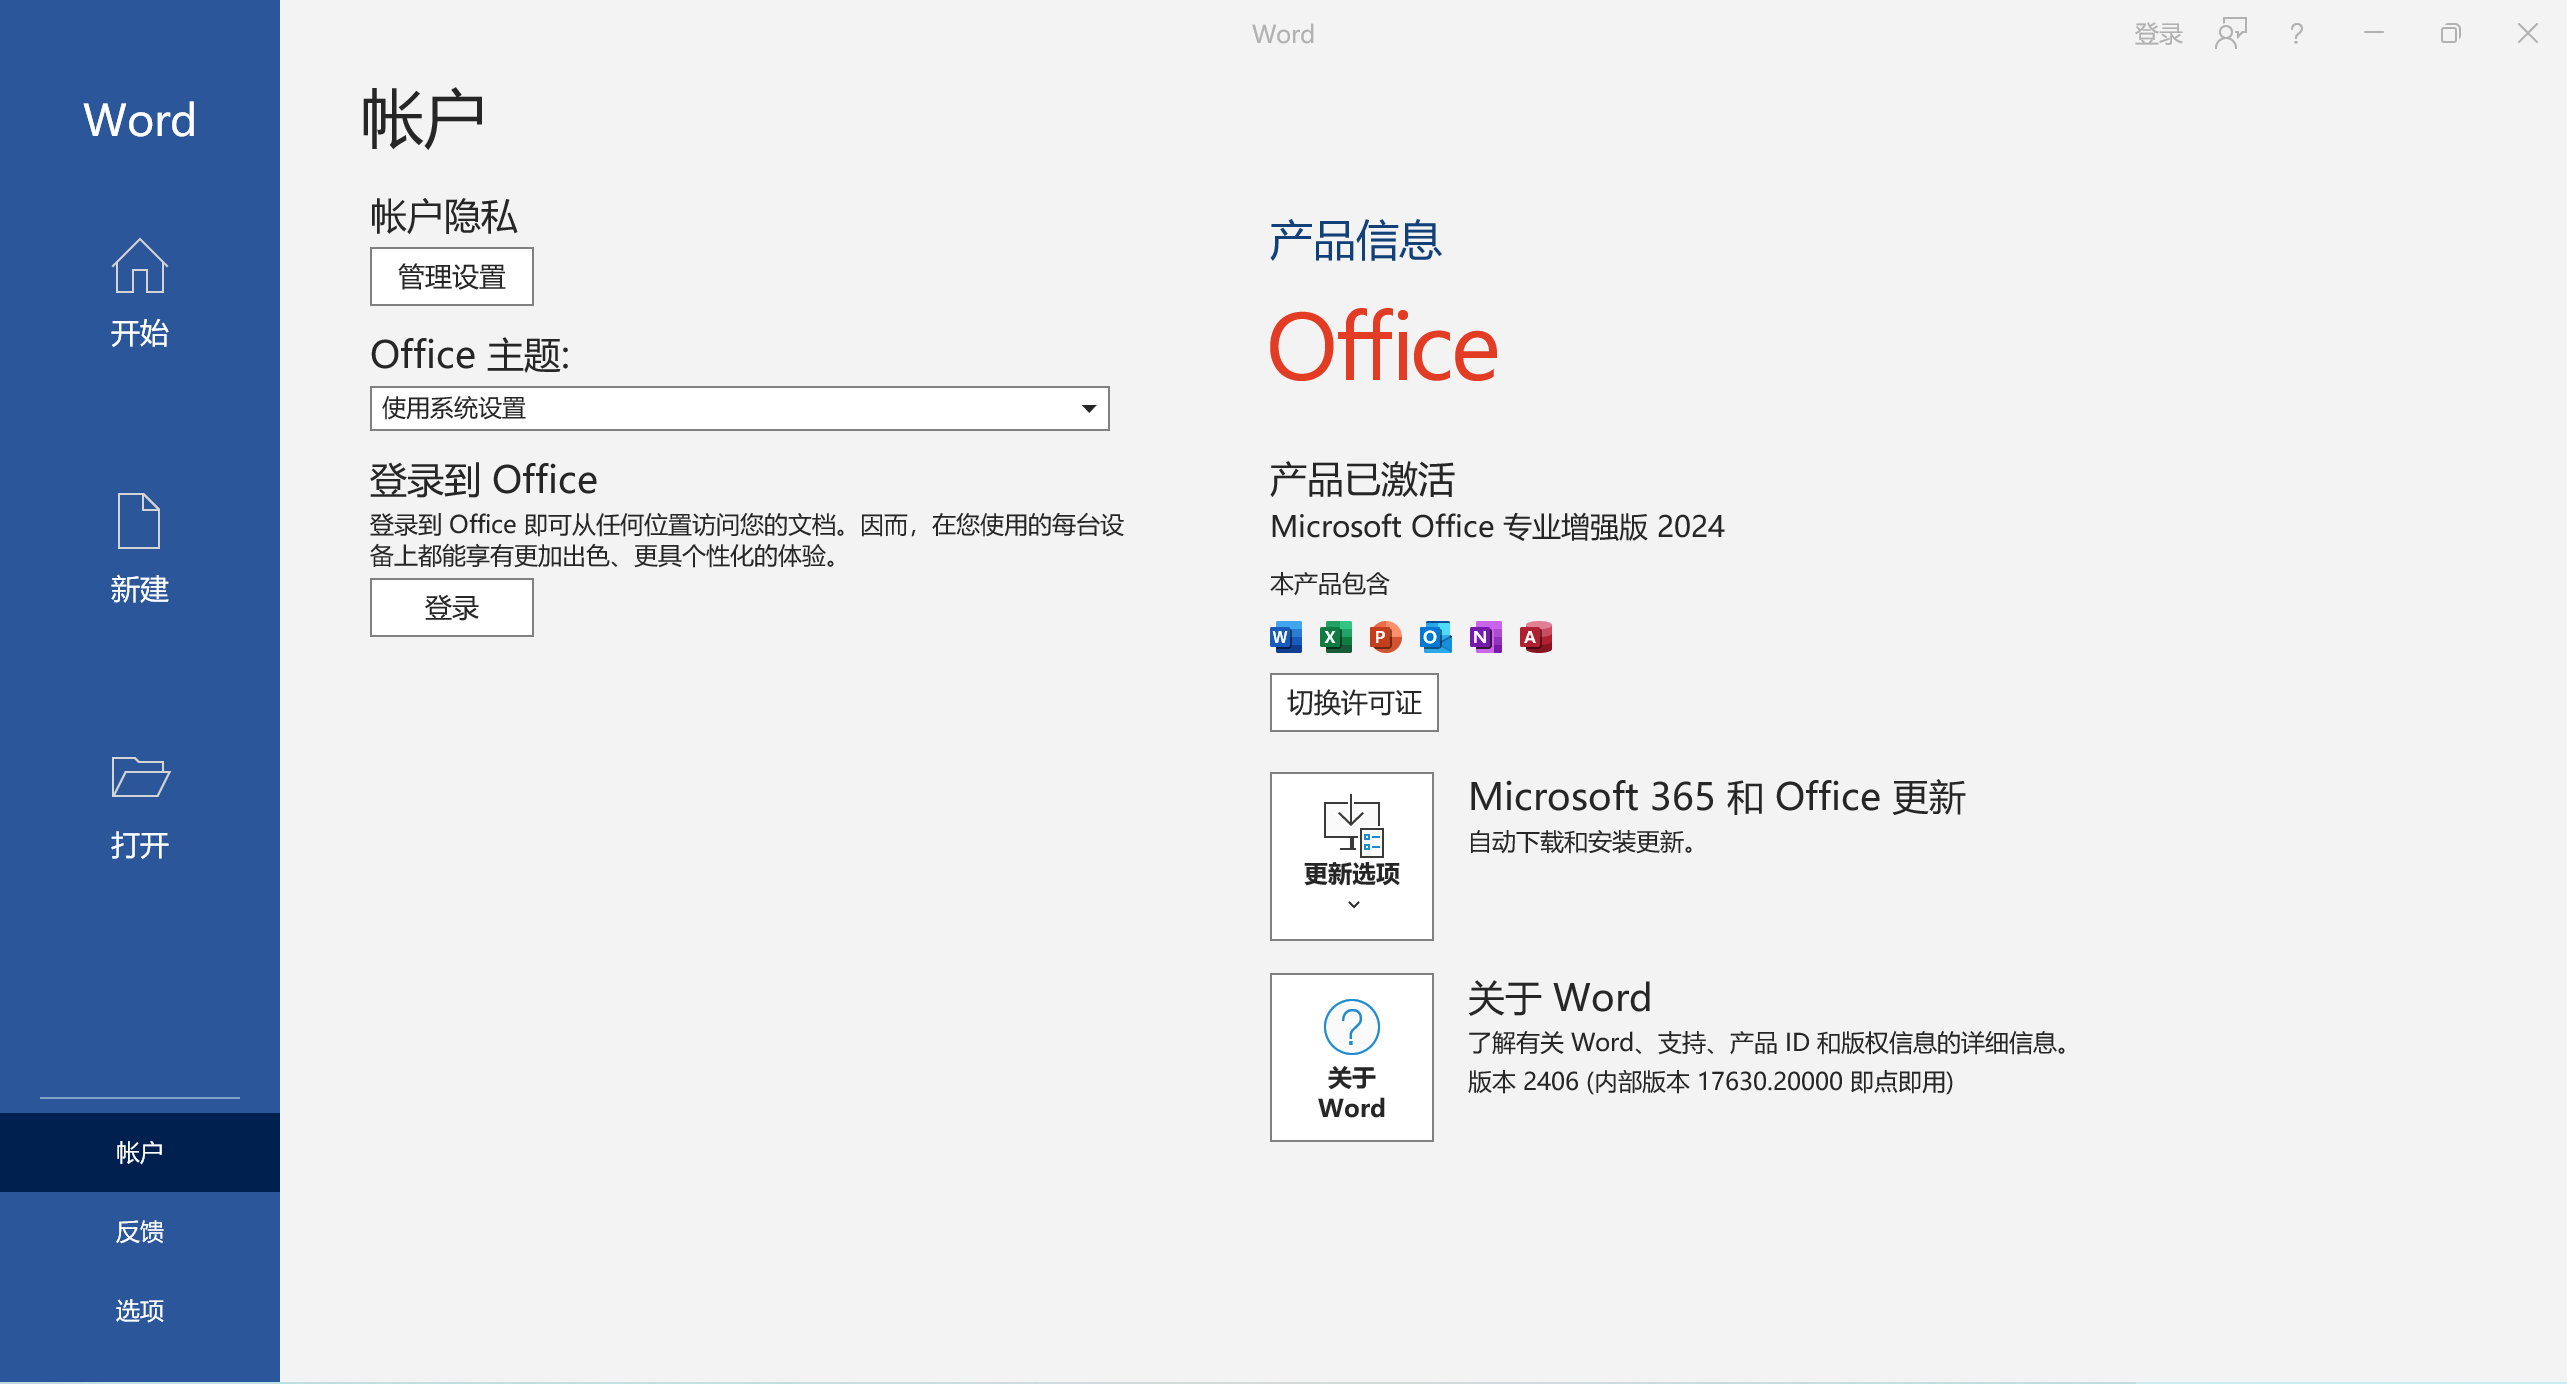 办公软件微软 Office 2024 Visio.Project 2024 预发布正式版 v16.0.17630.20000